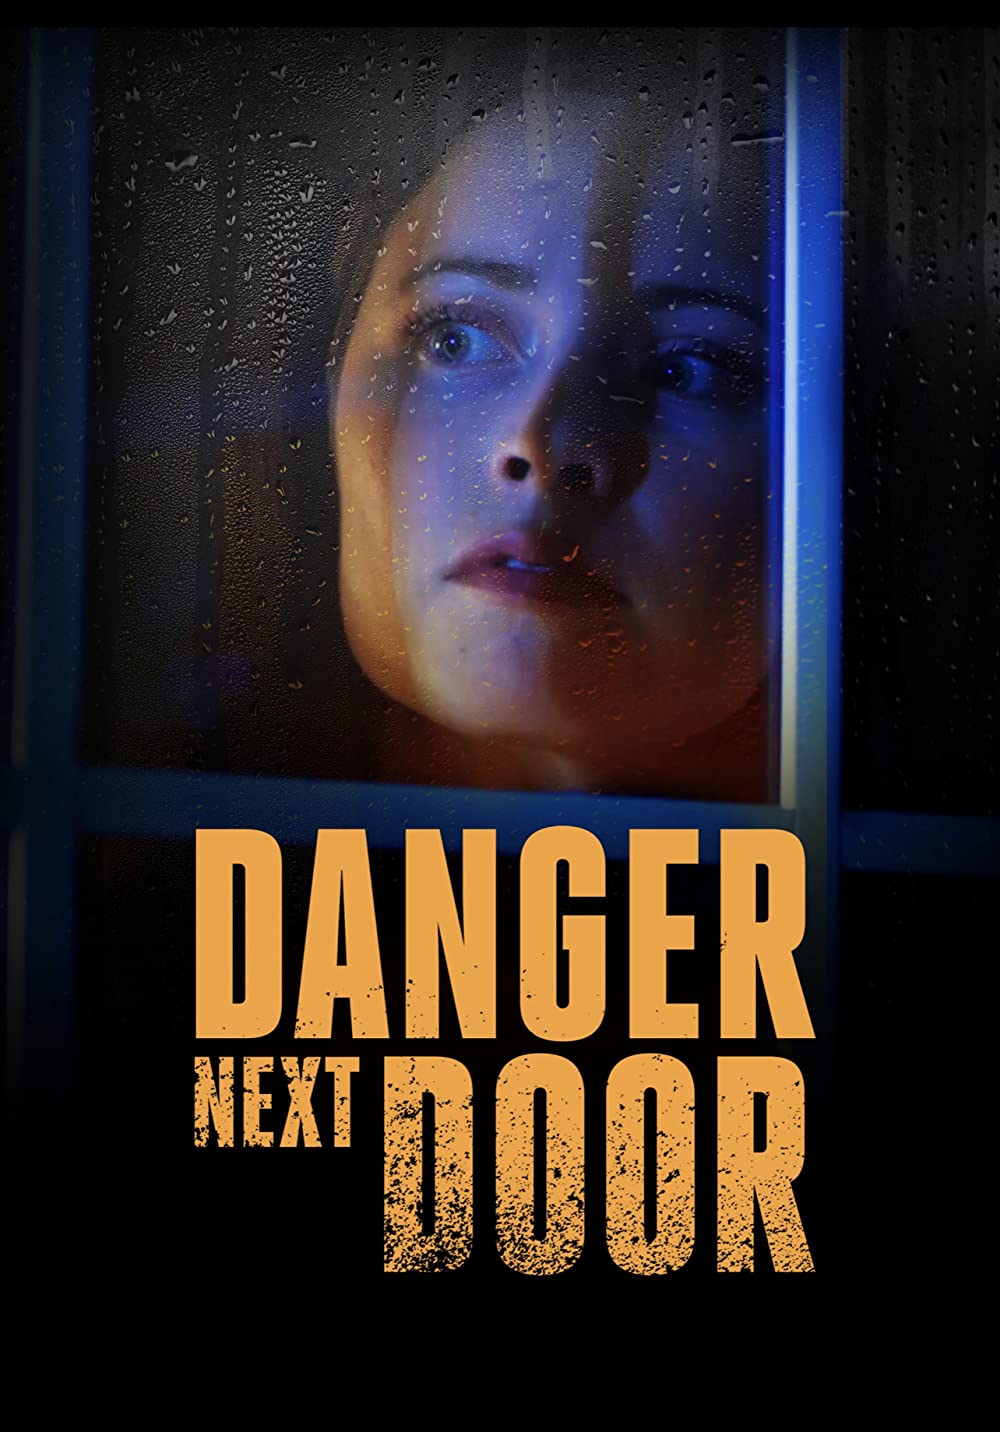 ดูหนังออนไลน์ฟรี The Danger Next Door (2021) เดอะแดนเจอร์ เน็กดอร์